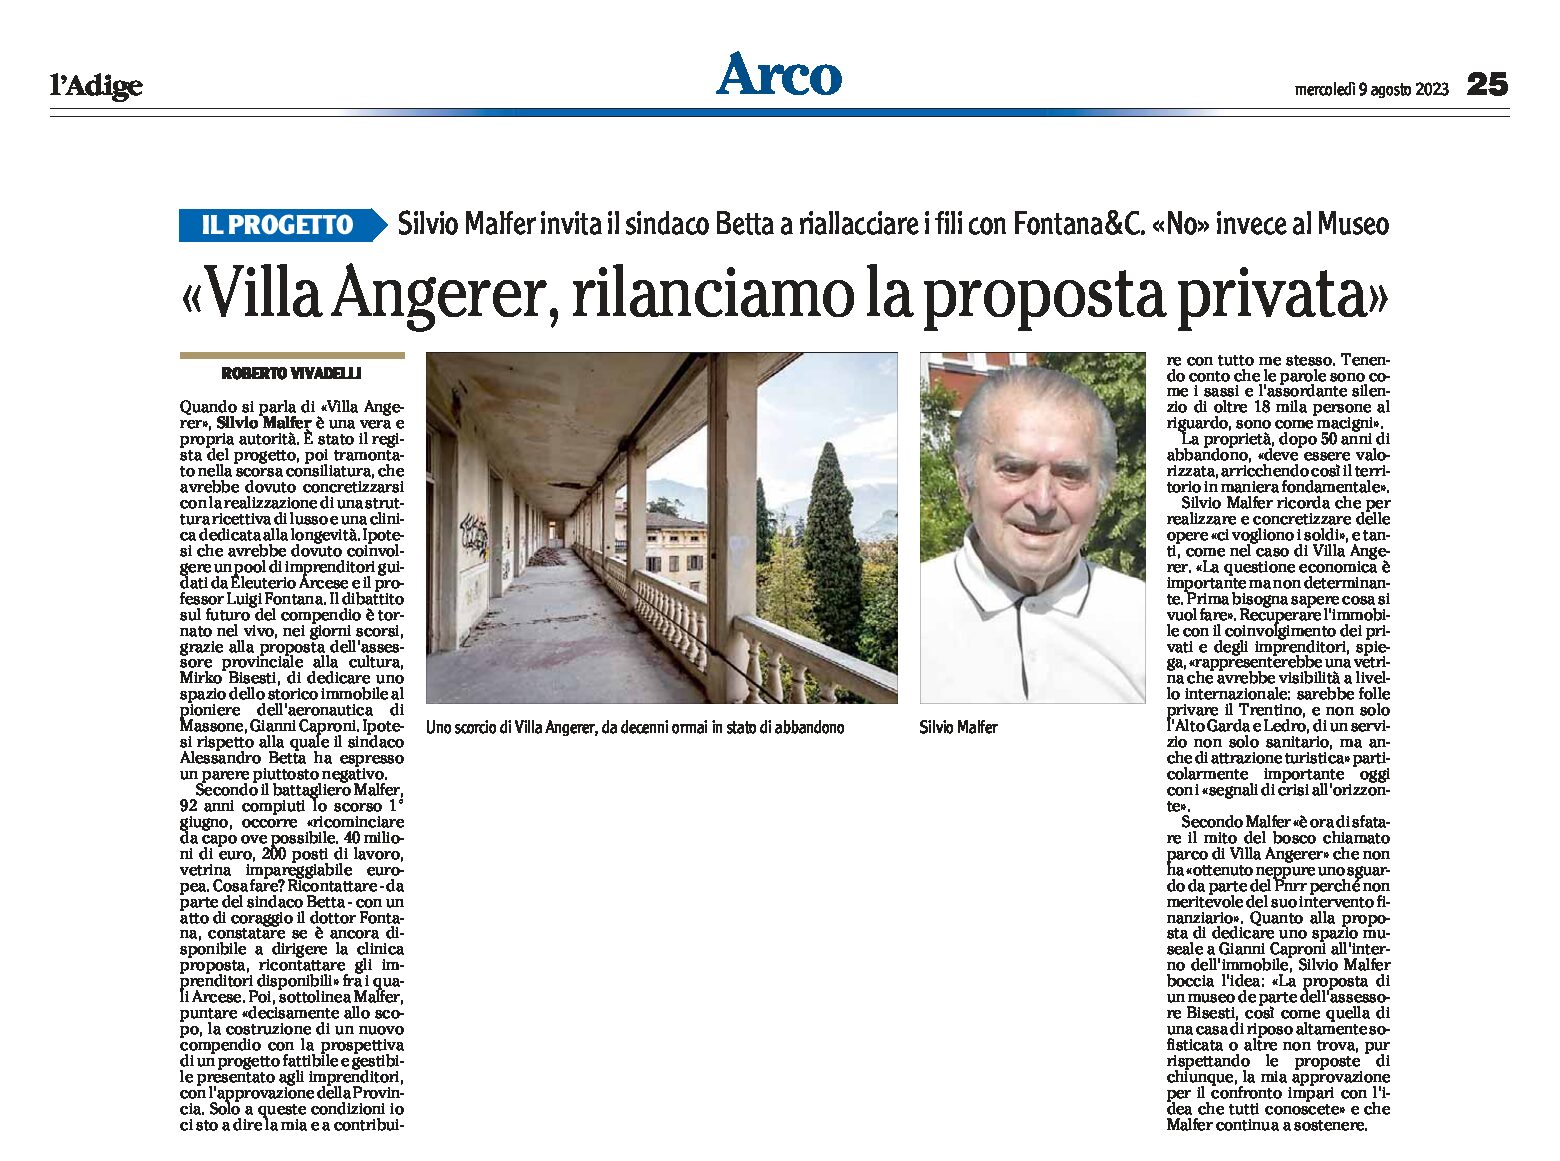 Arco, Villa Angerer: rilanciamo la proposta privata